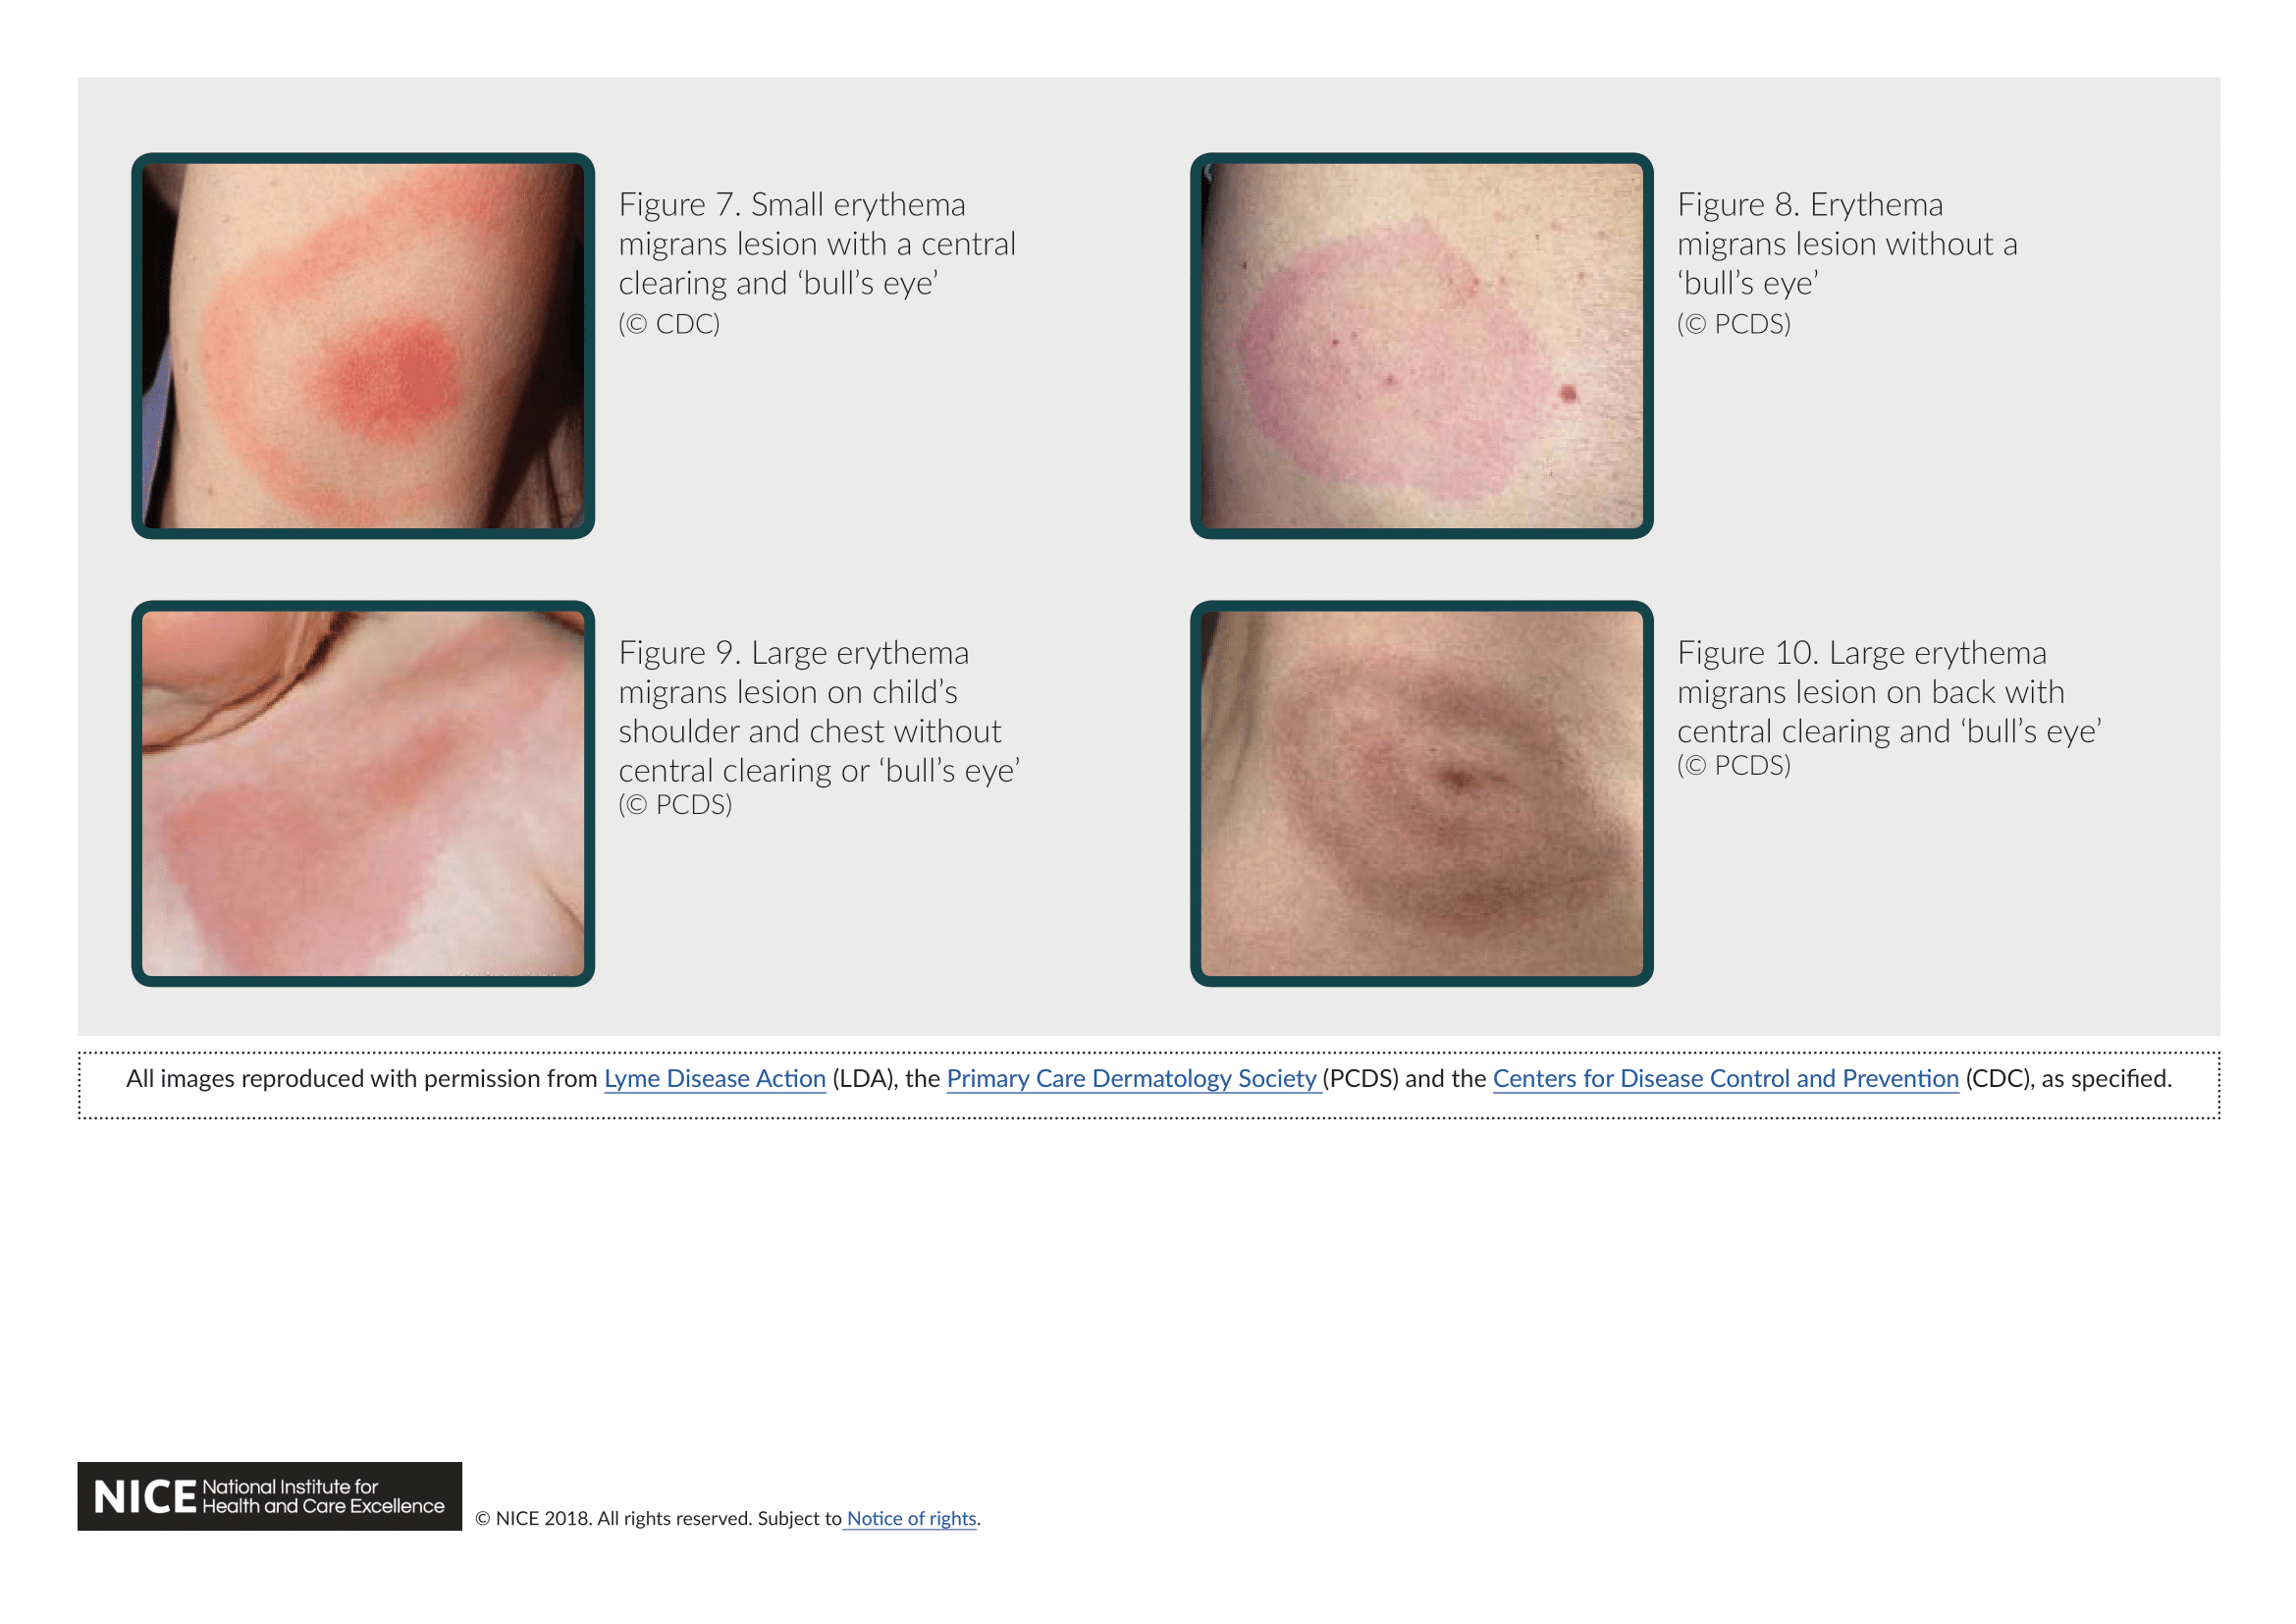 https://www.nice.org.uk/guidance/ng95/resources/lyme-disease-rash-images-pdf-4792273597